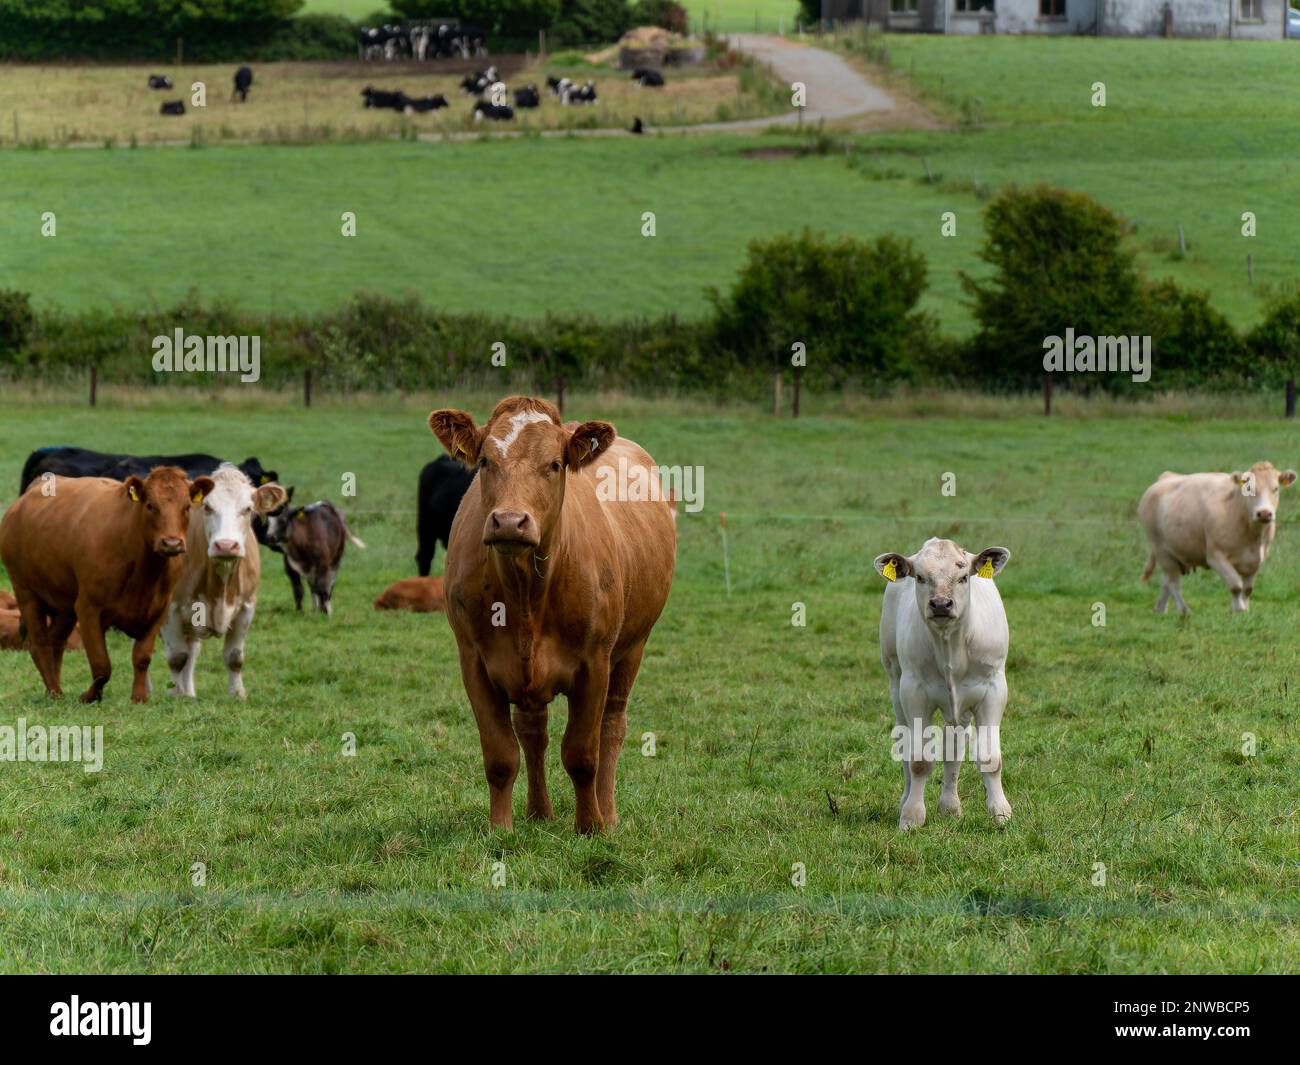 Curieux vache et veau sur un pâturage d'herbe verte lors d'une journée d'été. Vaches en pâturage libre. Élevage. Vache blanche et brune sur gazon vert Banque D'Images